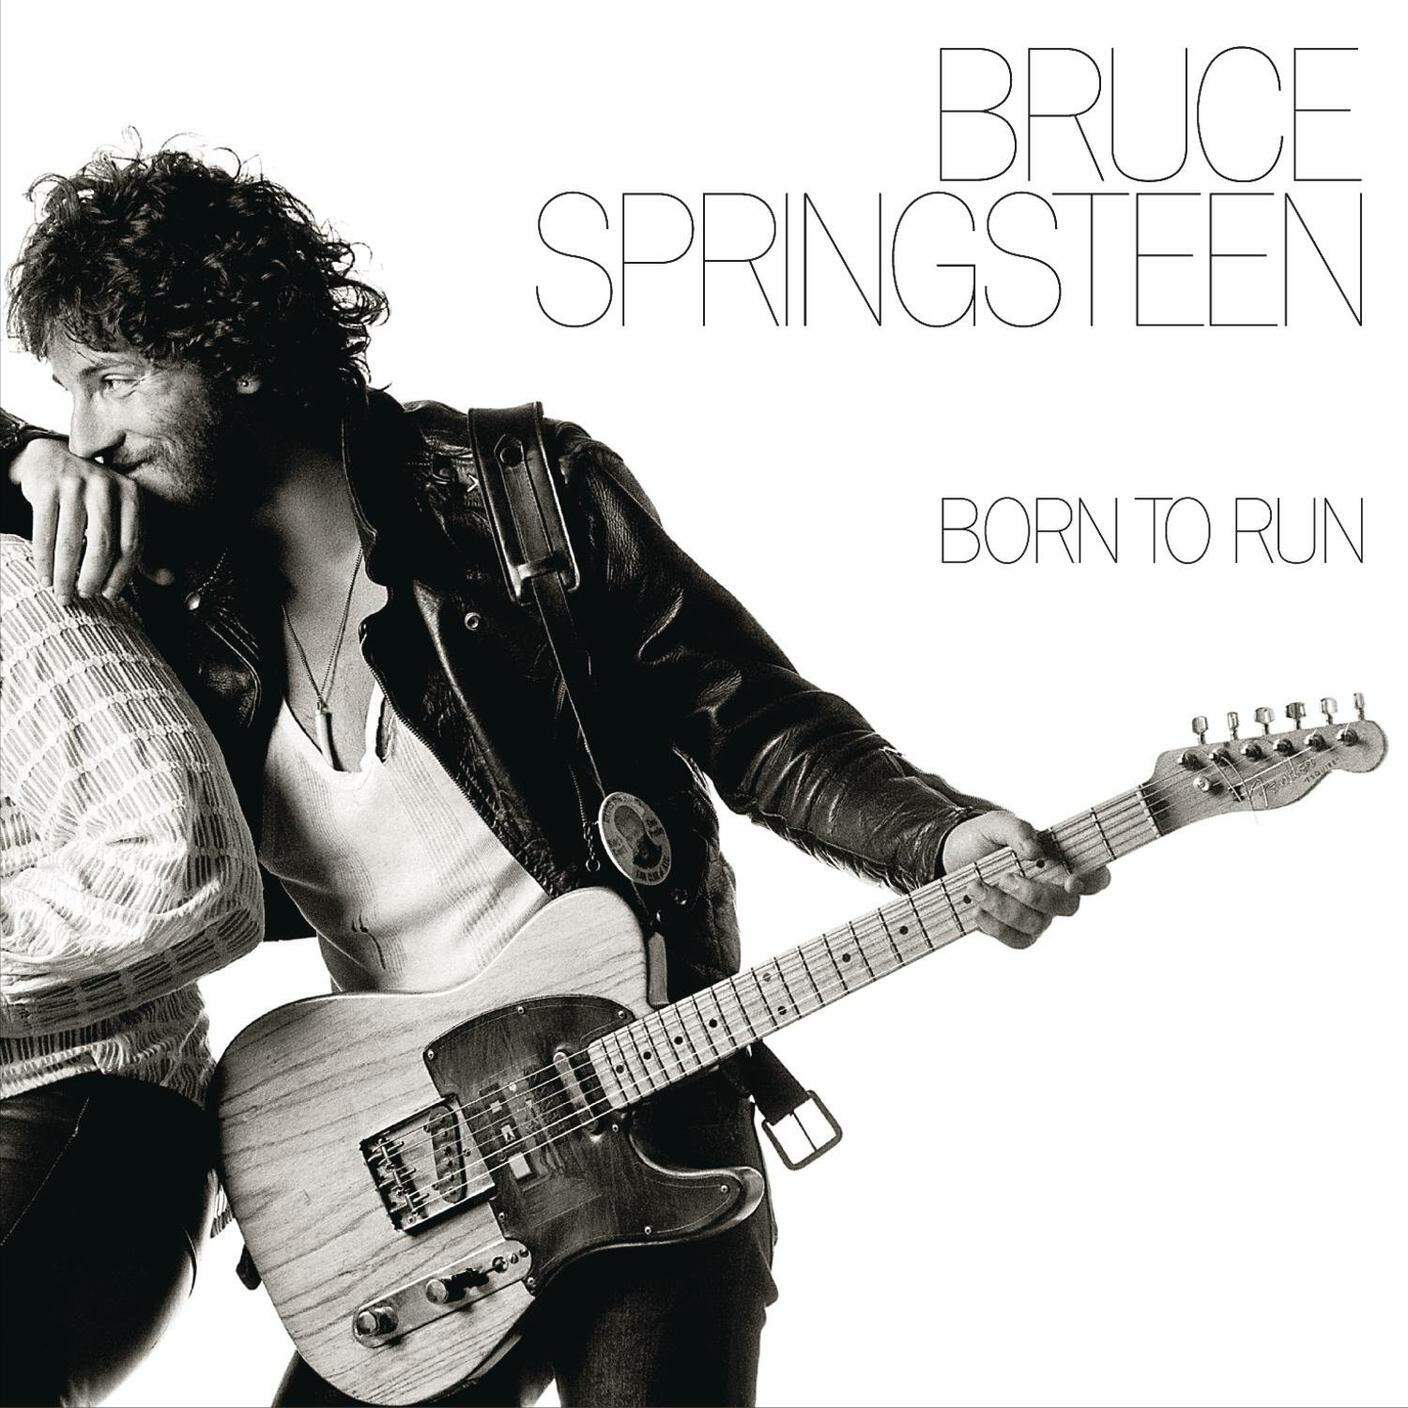 Bruce Springsteen, "Born to run", Columbia Records (dettaglio copertina)